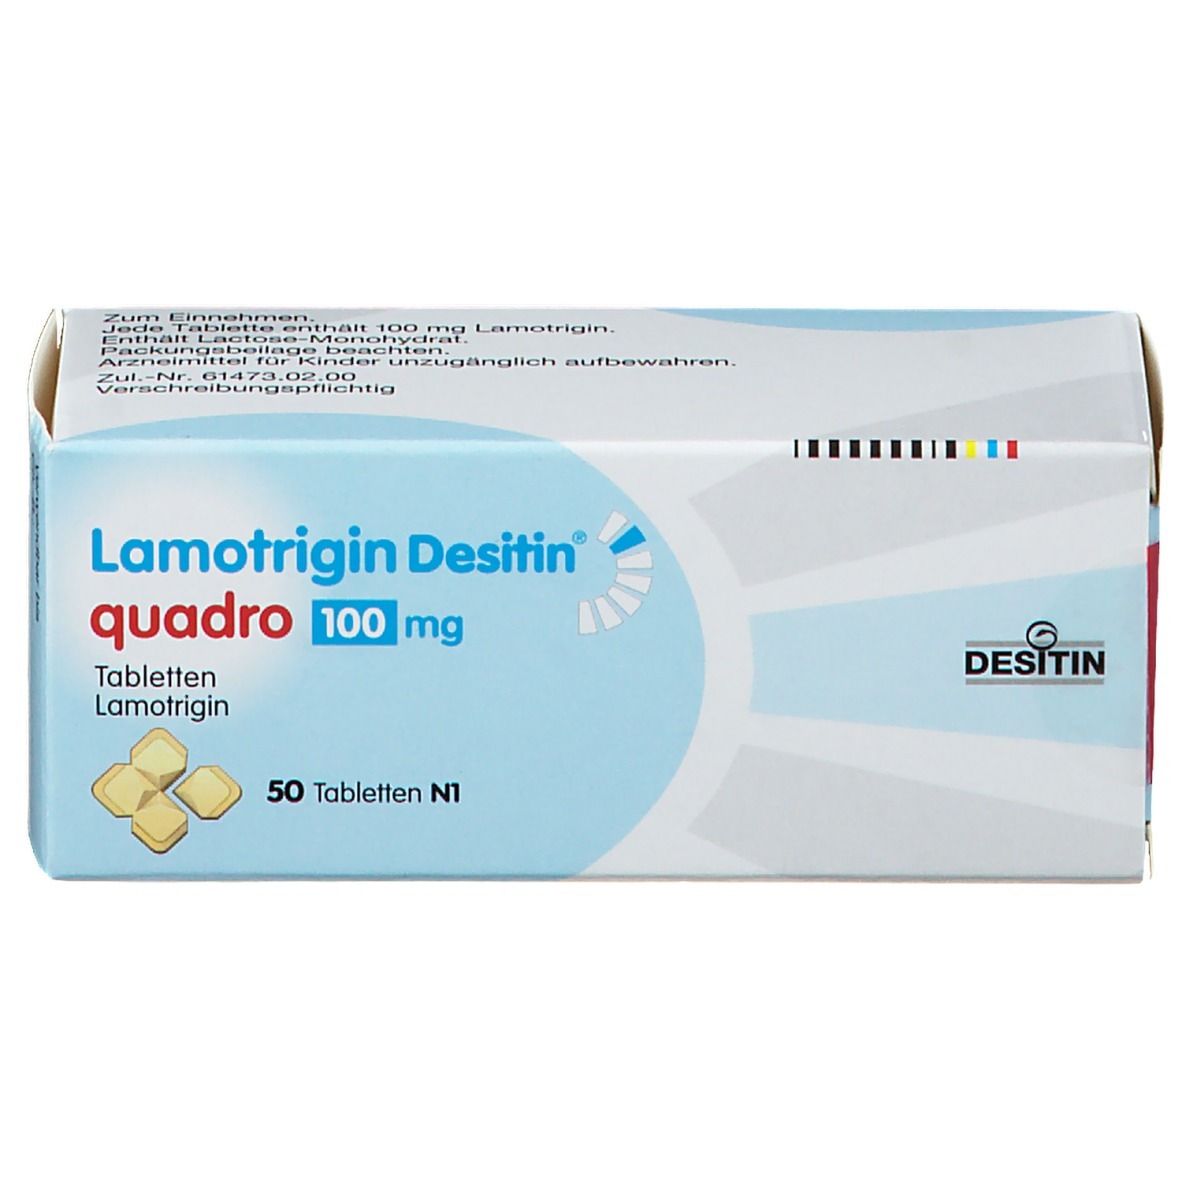 Lamotrigin Desitin® quadro 100 mg